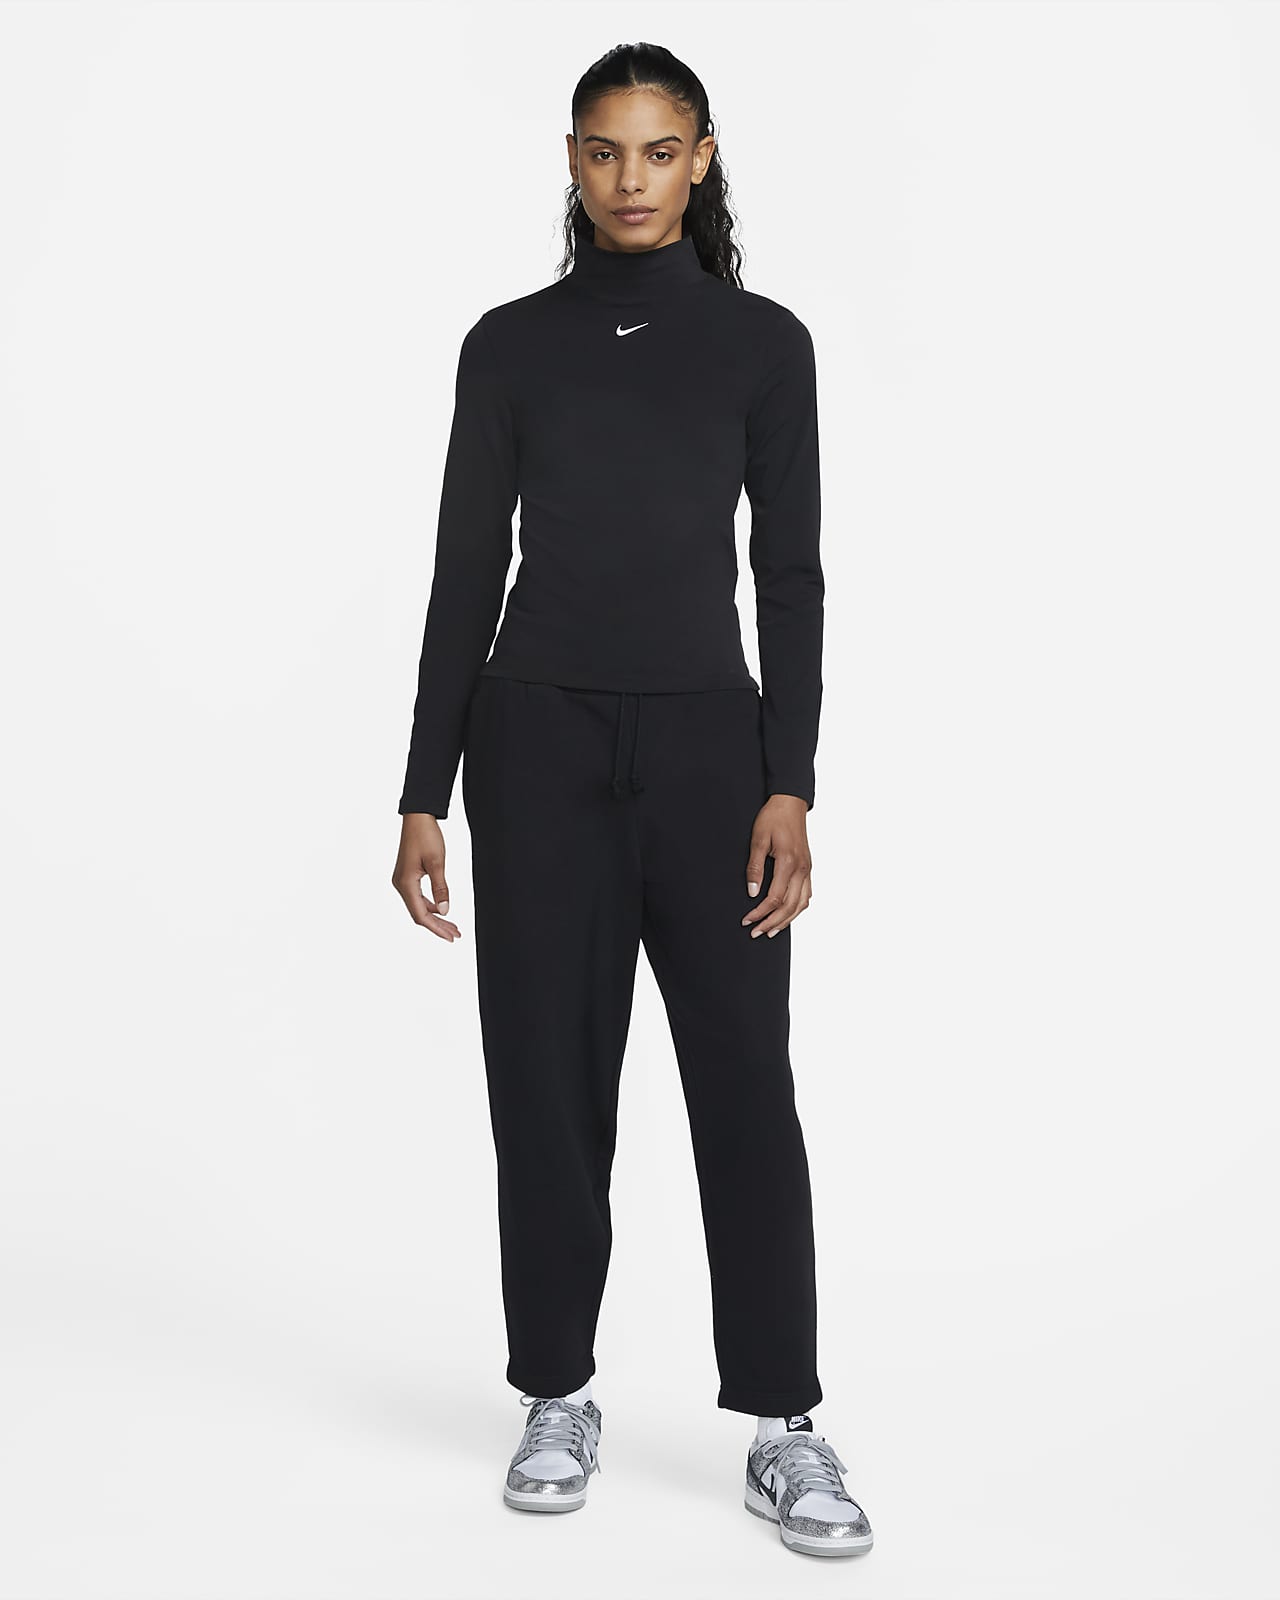 Nike Sportswear Women's Fleece Track Top.